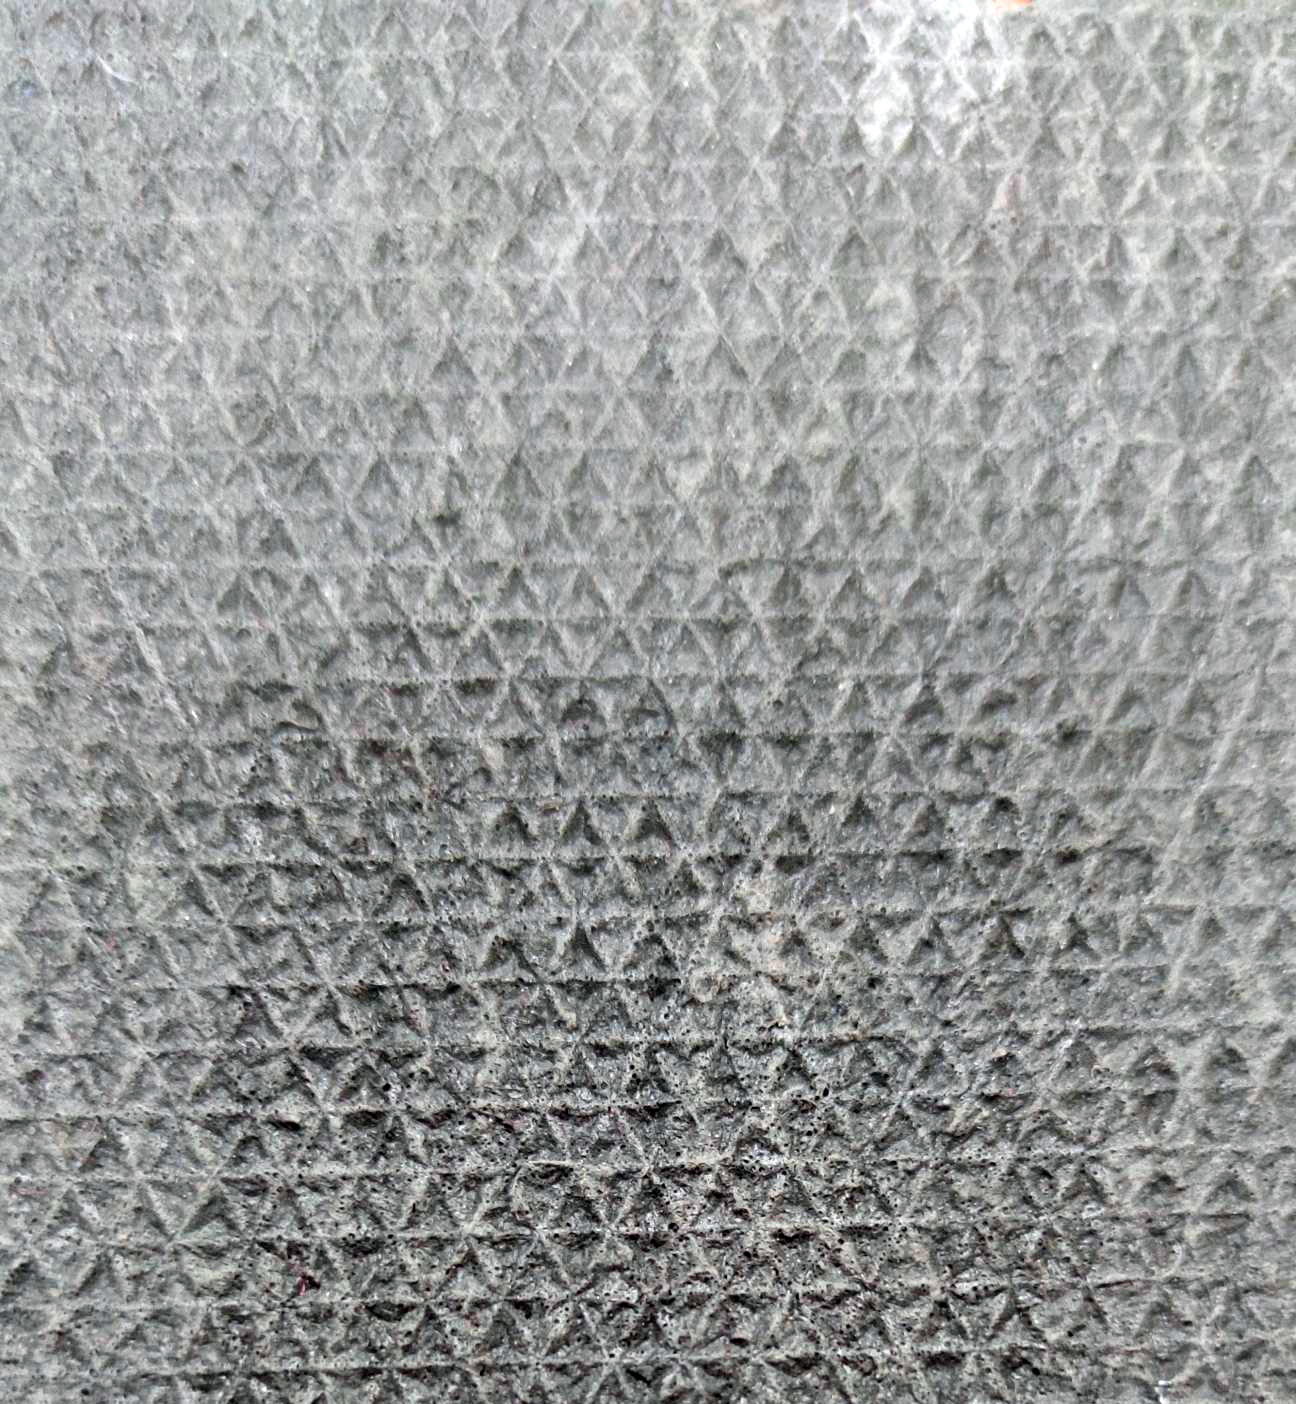 Иглопробивное покрытие на резине "Практик" 4.0x30м коричневый